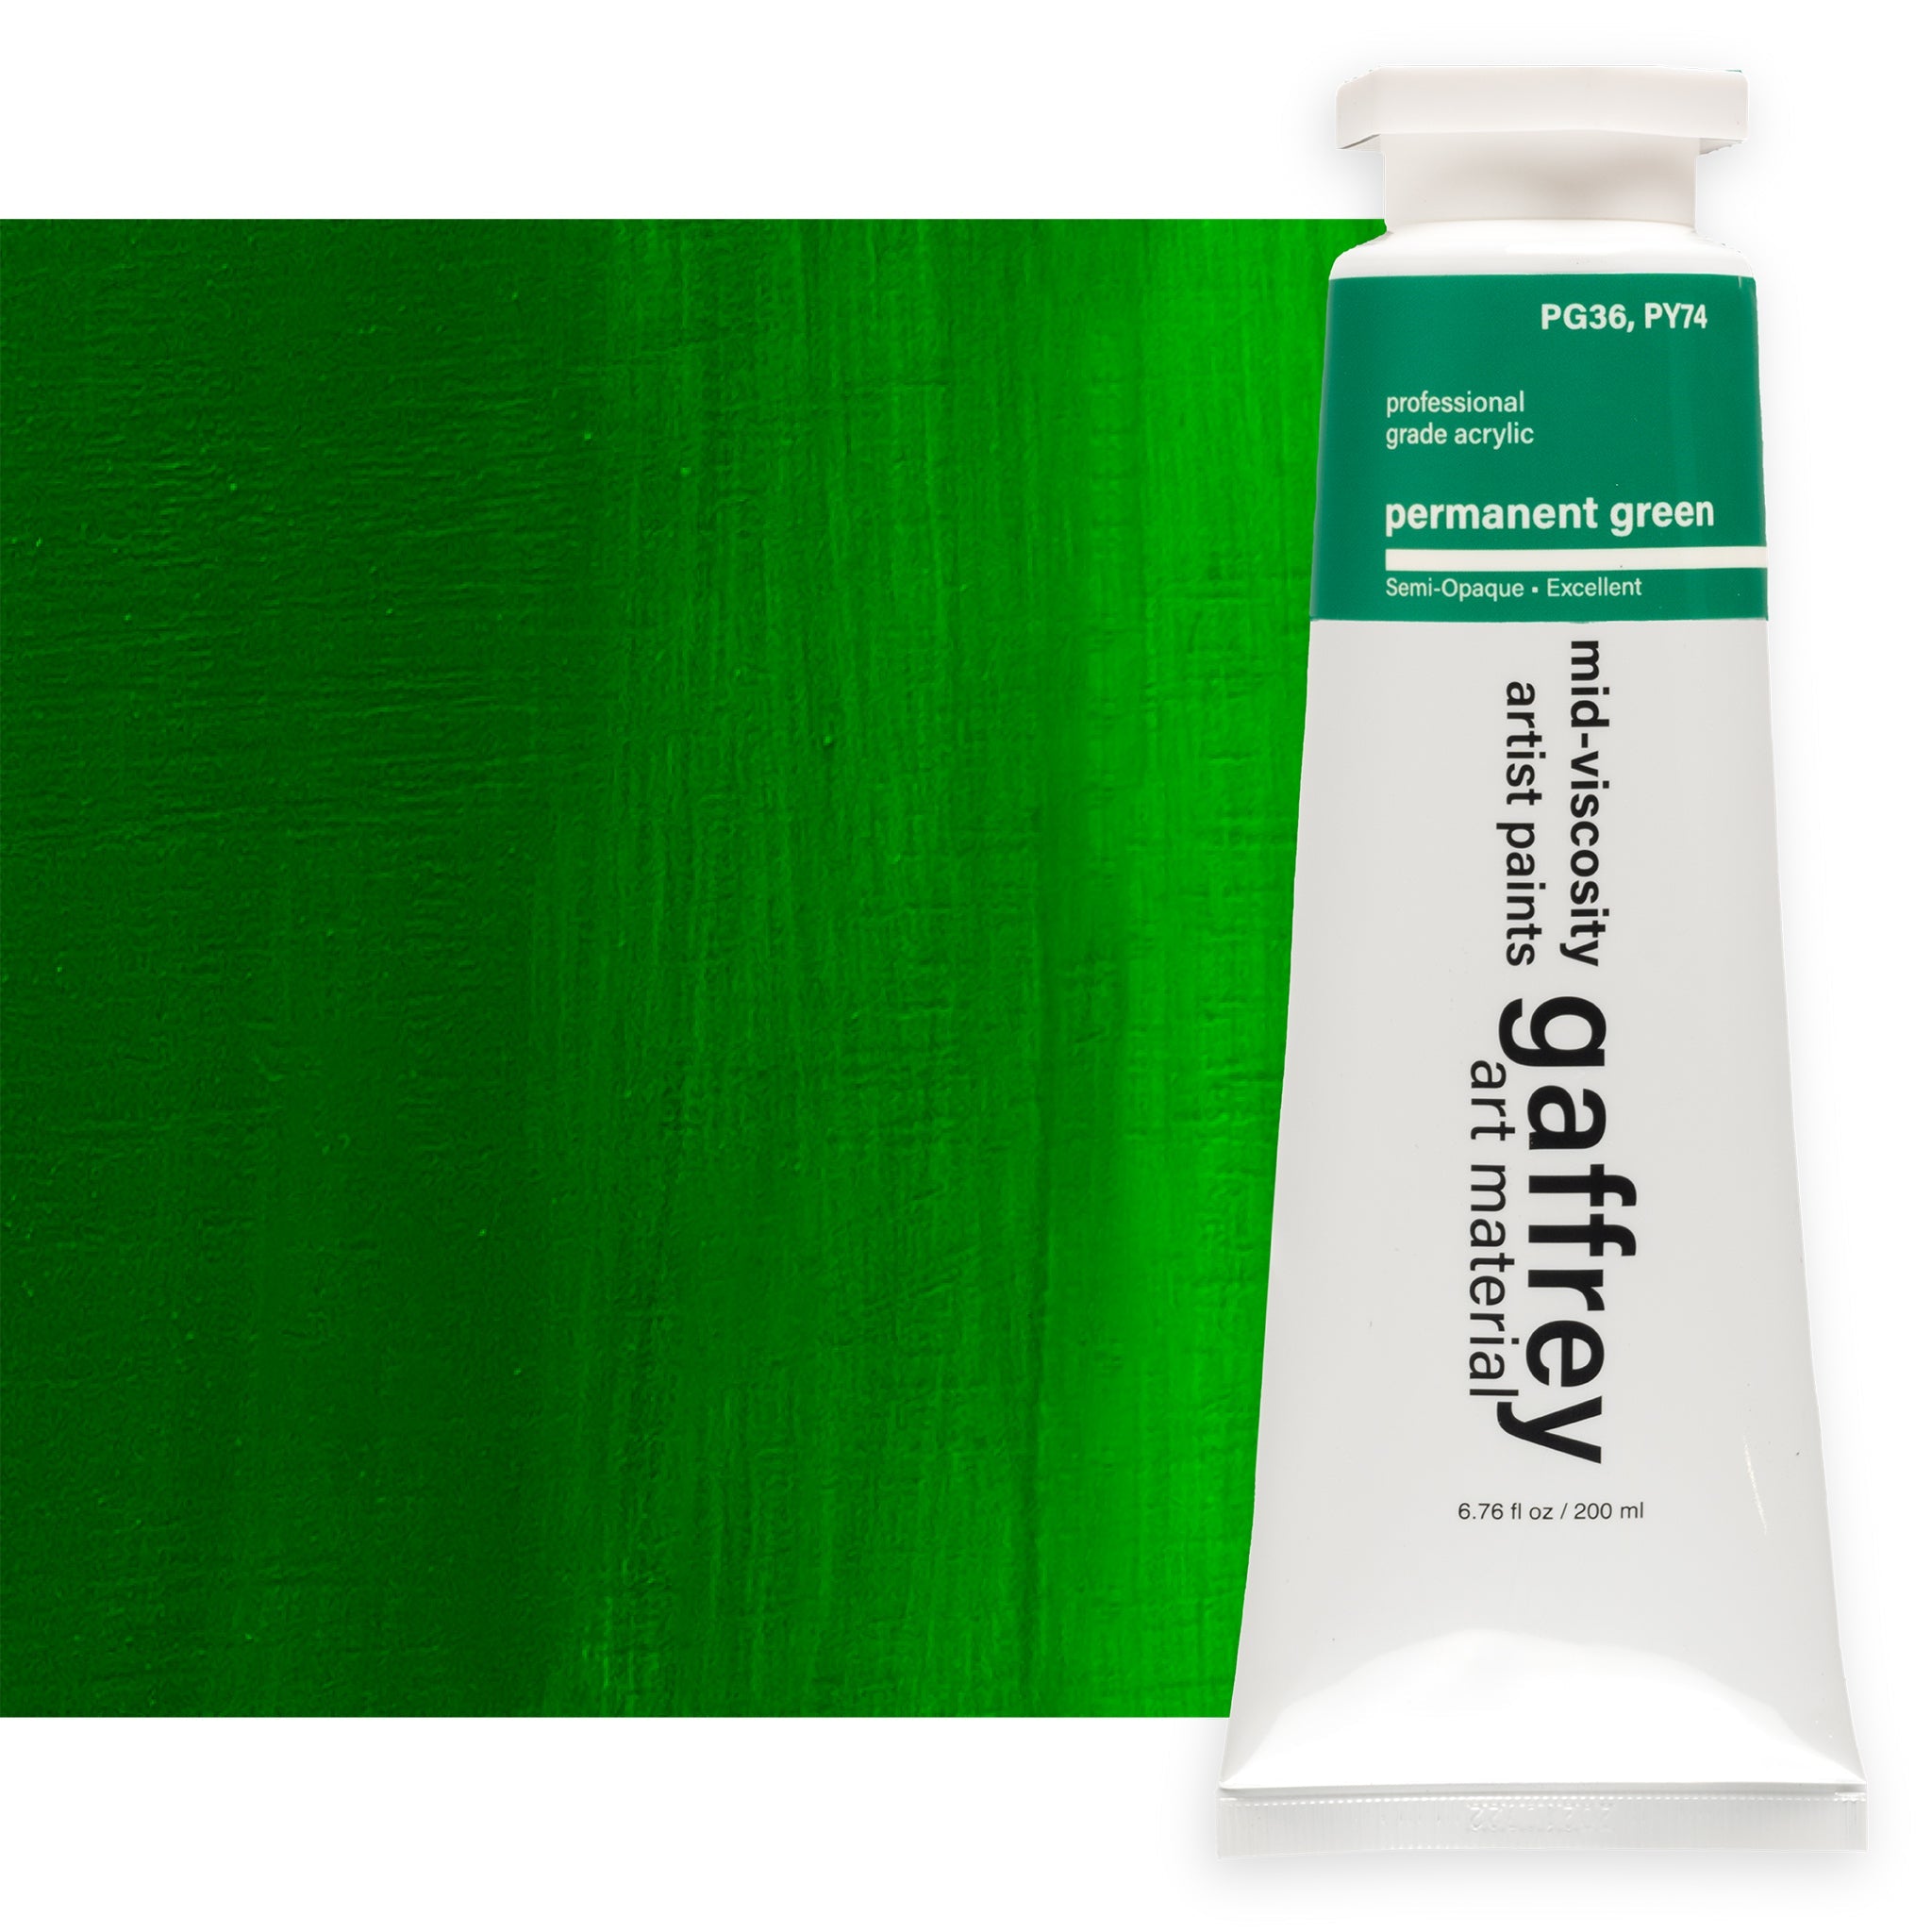 Permanent Green Artist Acrylic Paint - Gaffrey Art Material